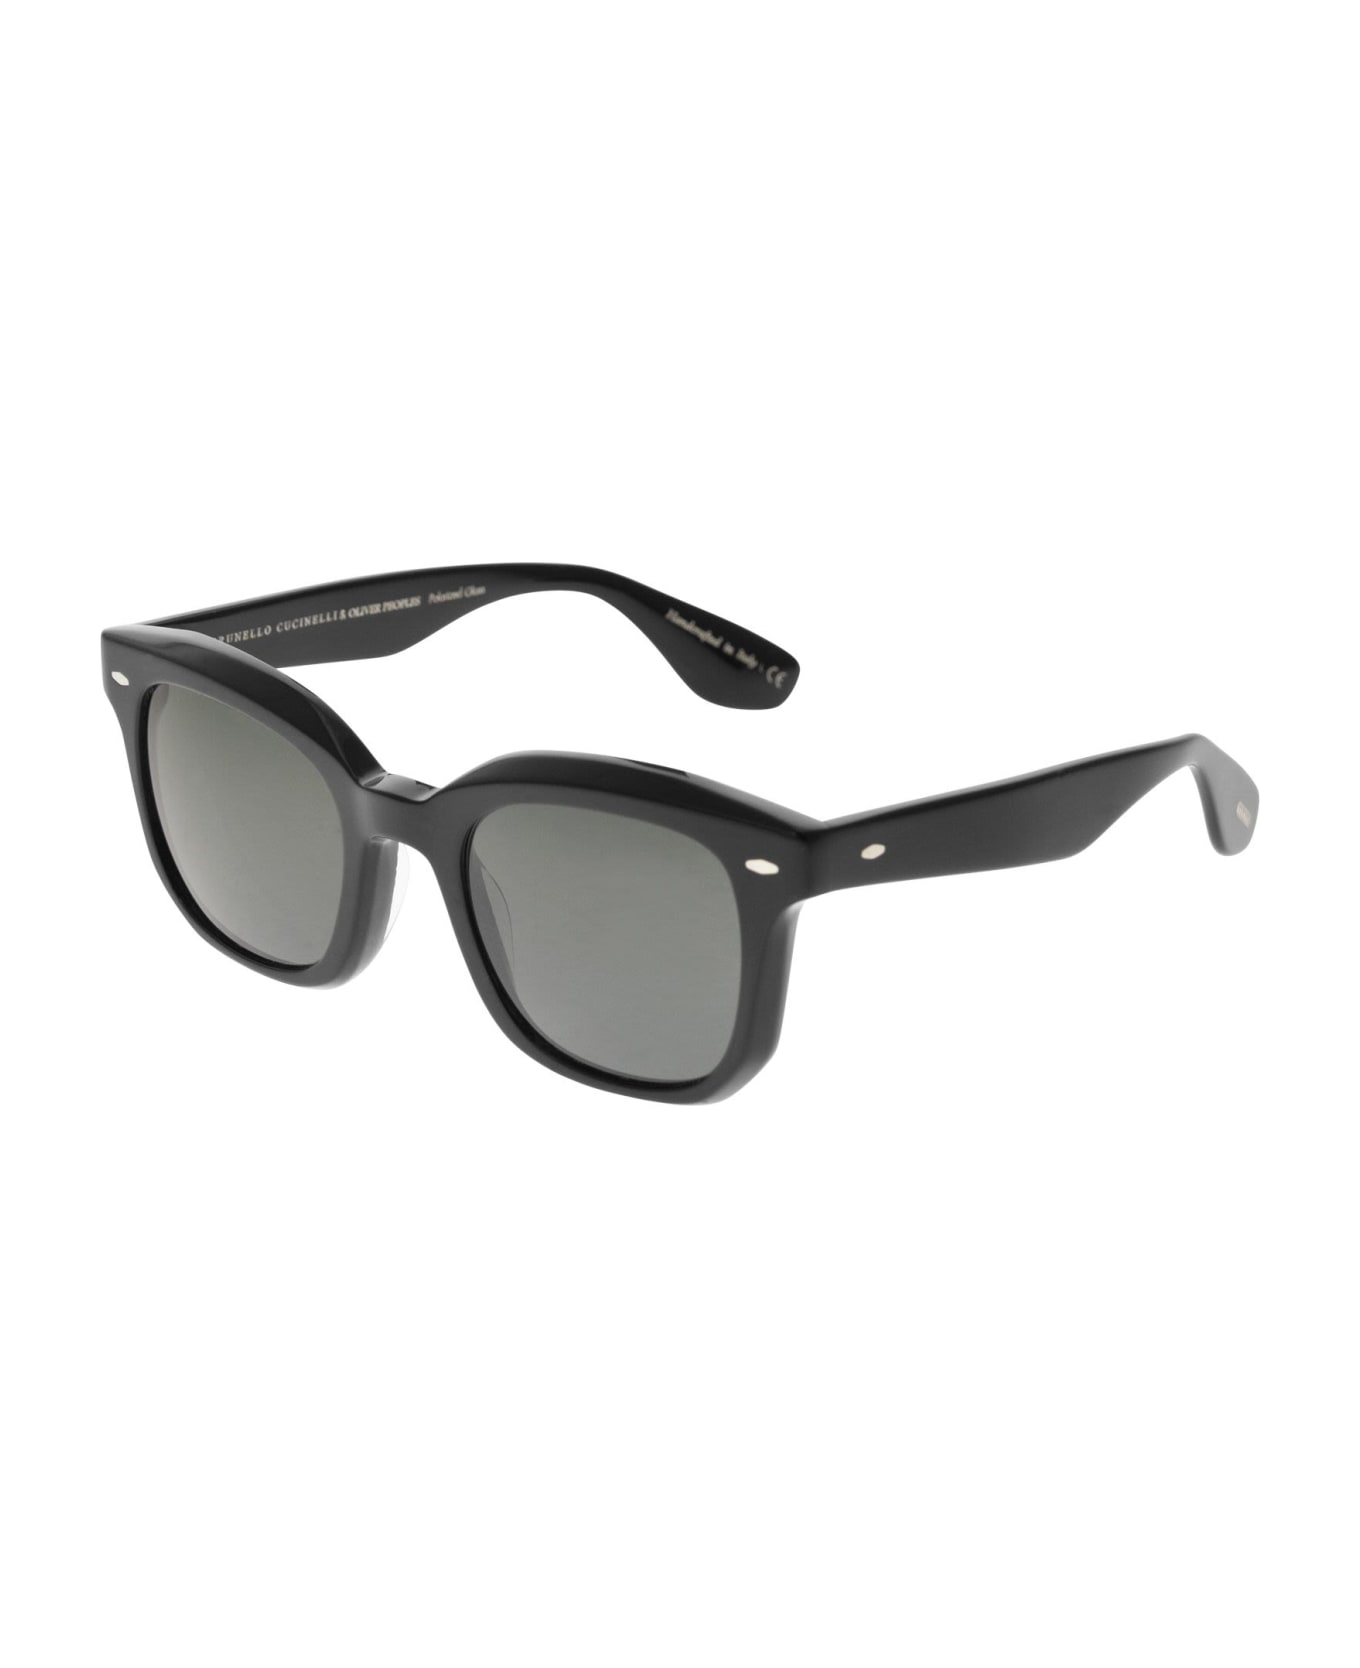 Brunello Cucinelli Nino Acetate Sunglasses With Polarised Lenses - Black